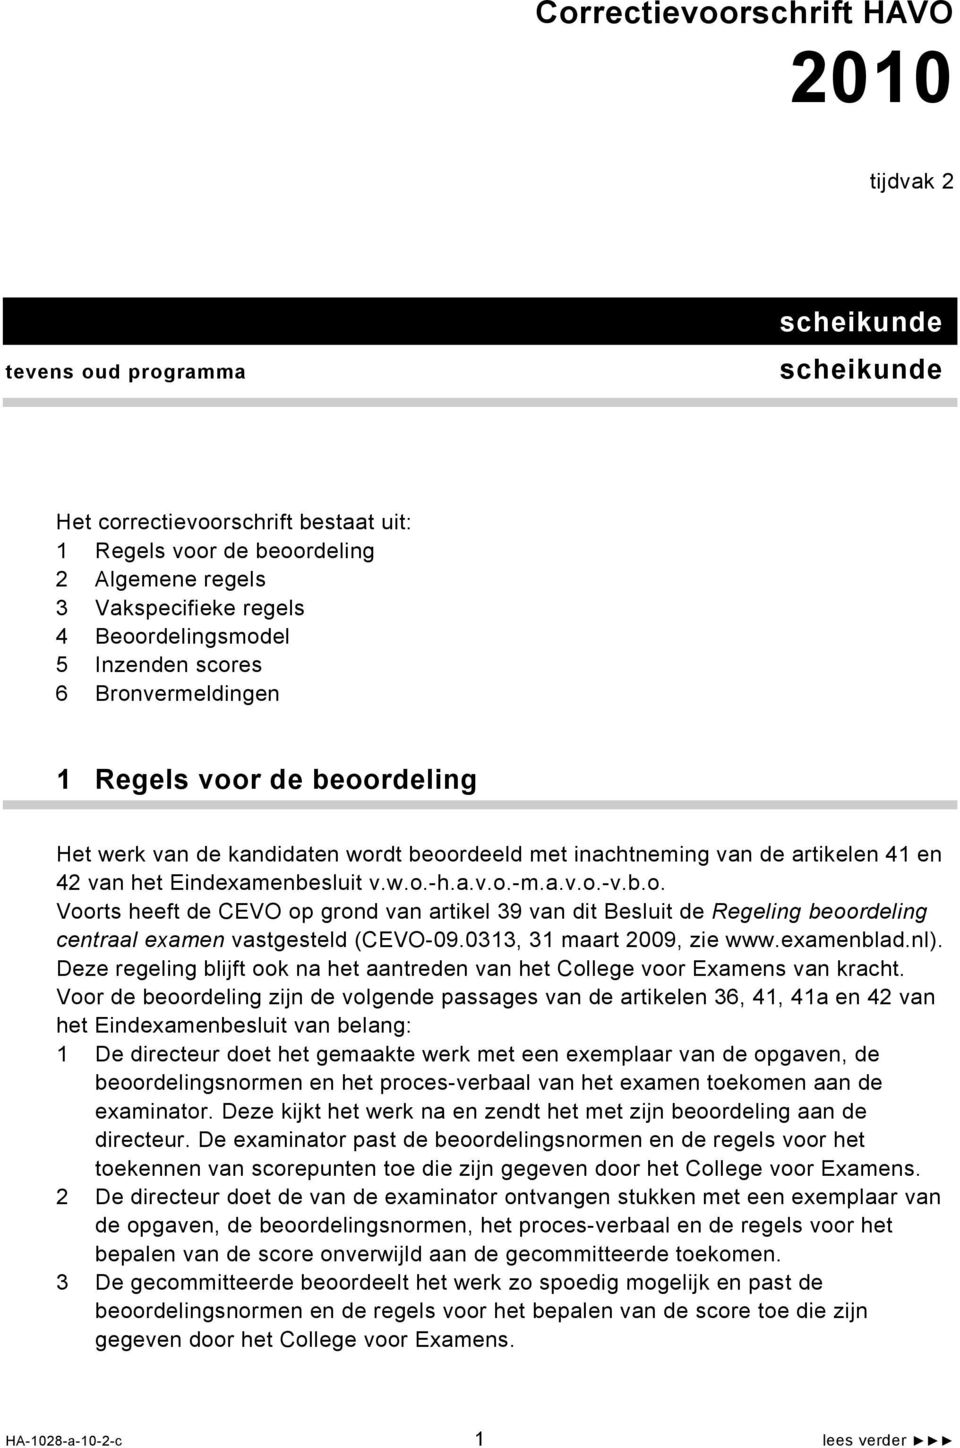 a.v.o.-m.a.v.o.-v.b.o. Voorts heeft de CEVO op grond van artikel 39 van dit Besluit de Regeling beoordeling centraal examen vastgesteld (CEVO-09.0313, 31 maart 2009, zie www.examenblad.nl).